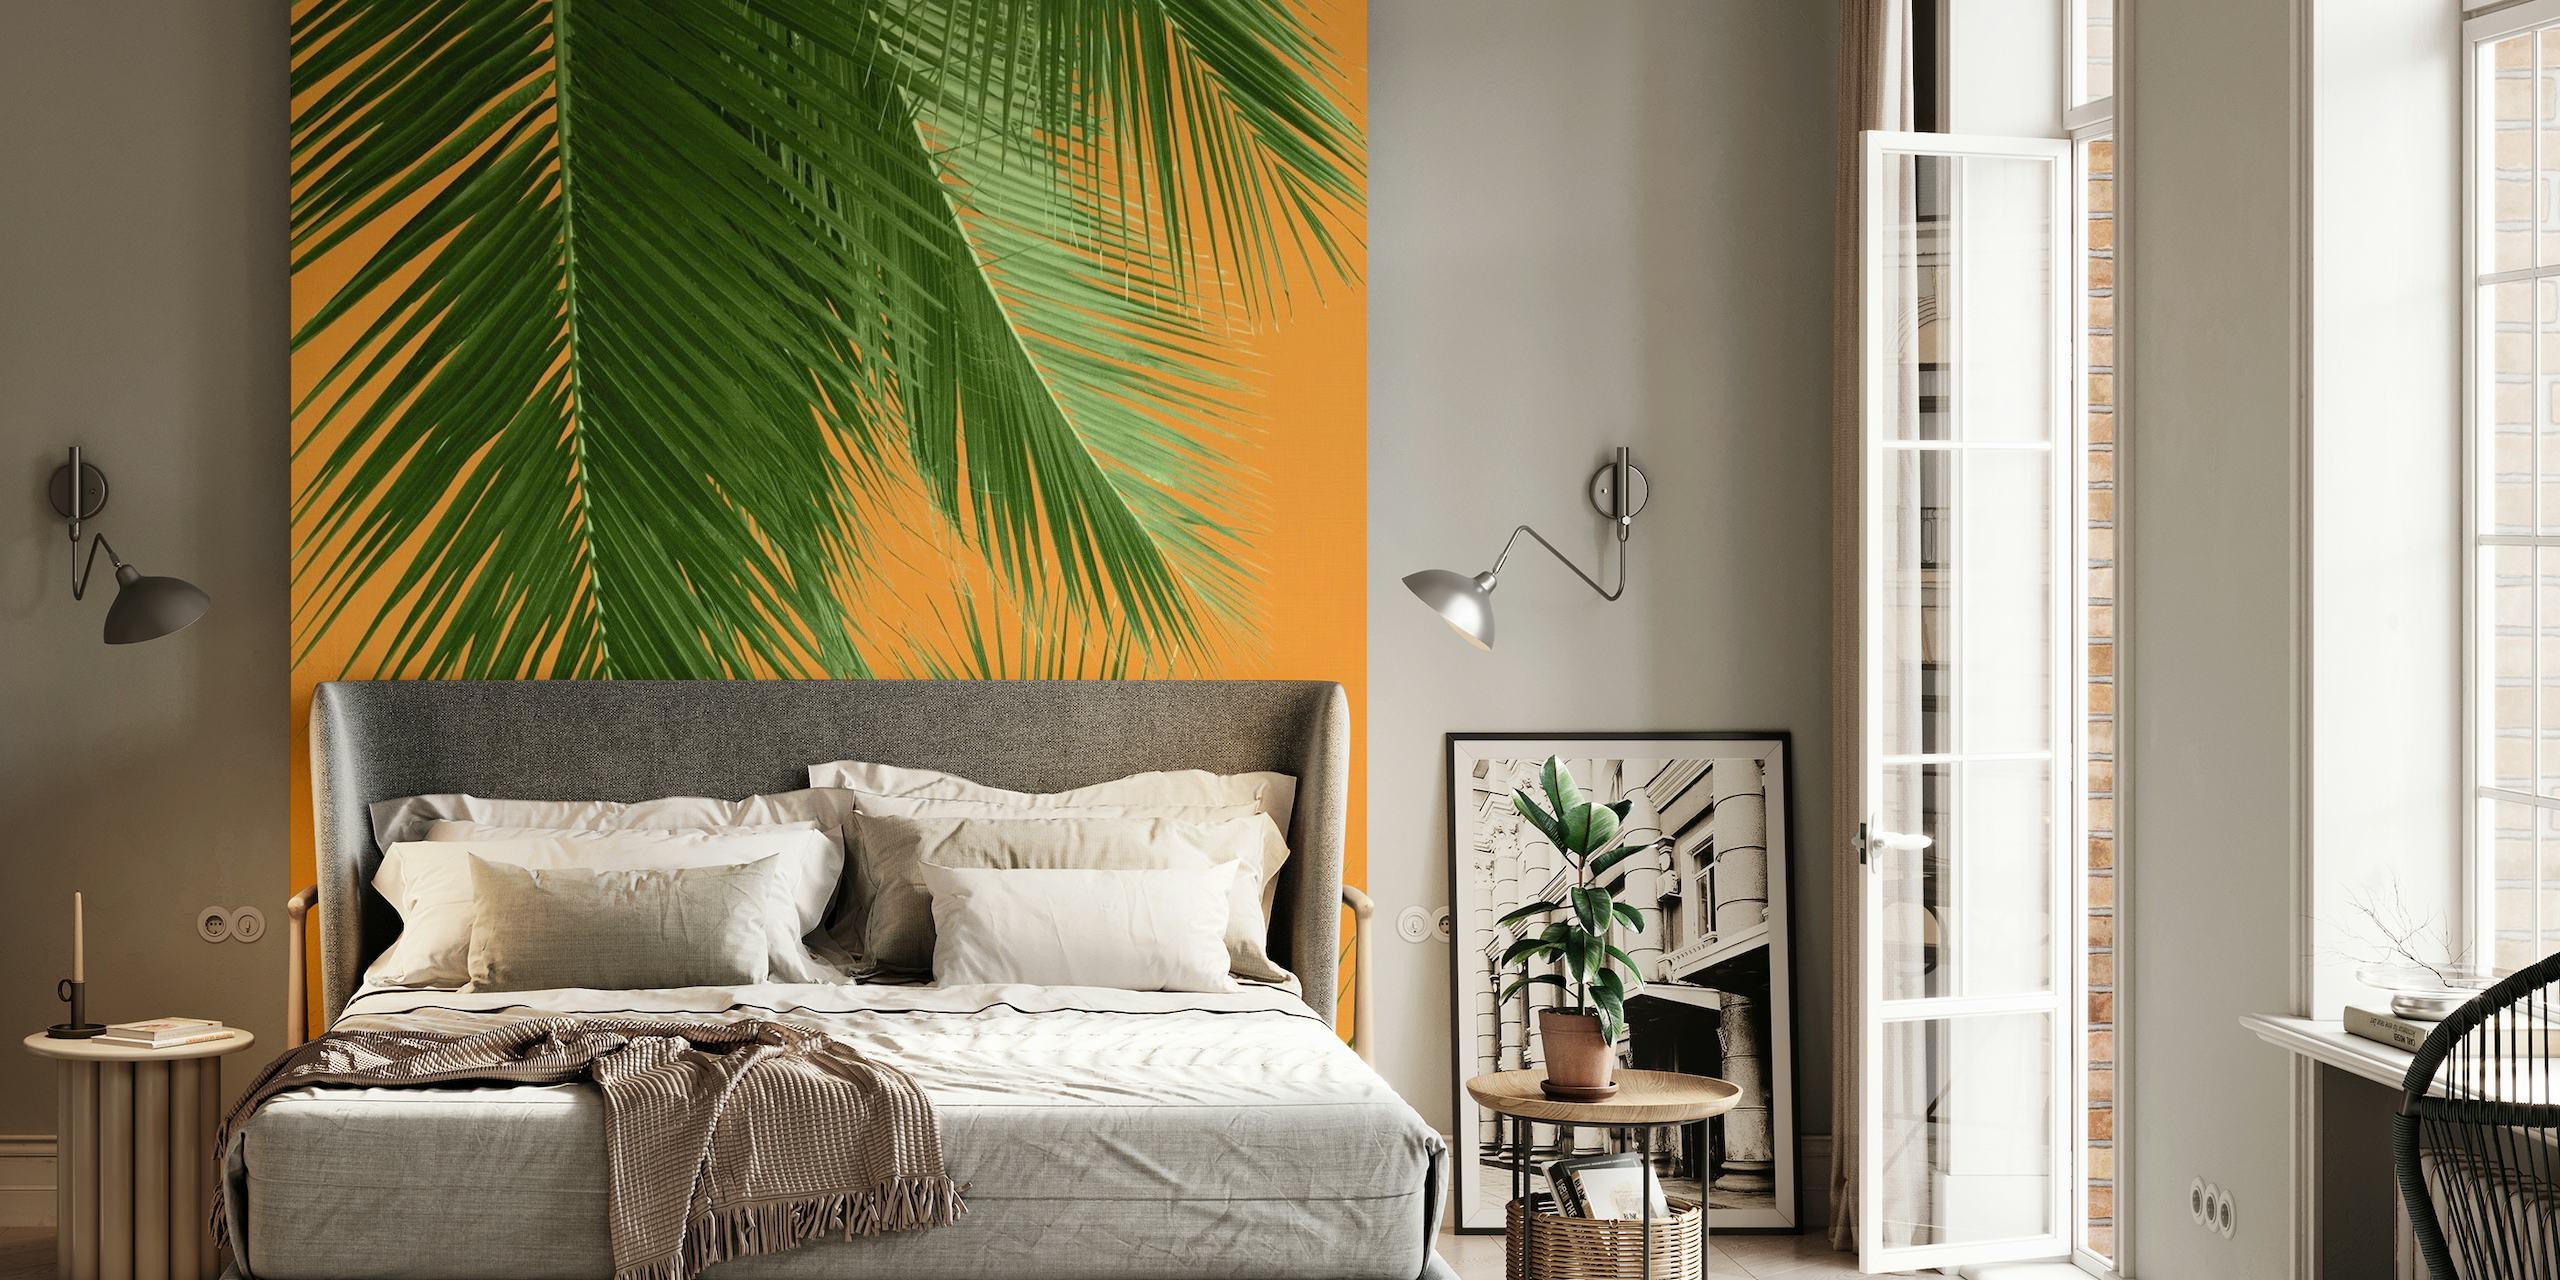 Groen palmbladerenpatroon op oranje muurschildering als achtergrond